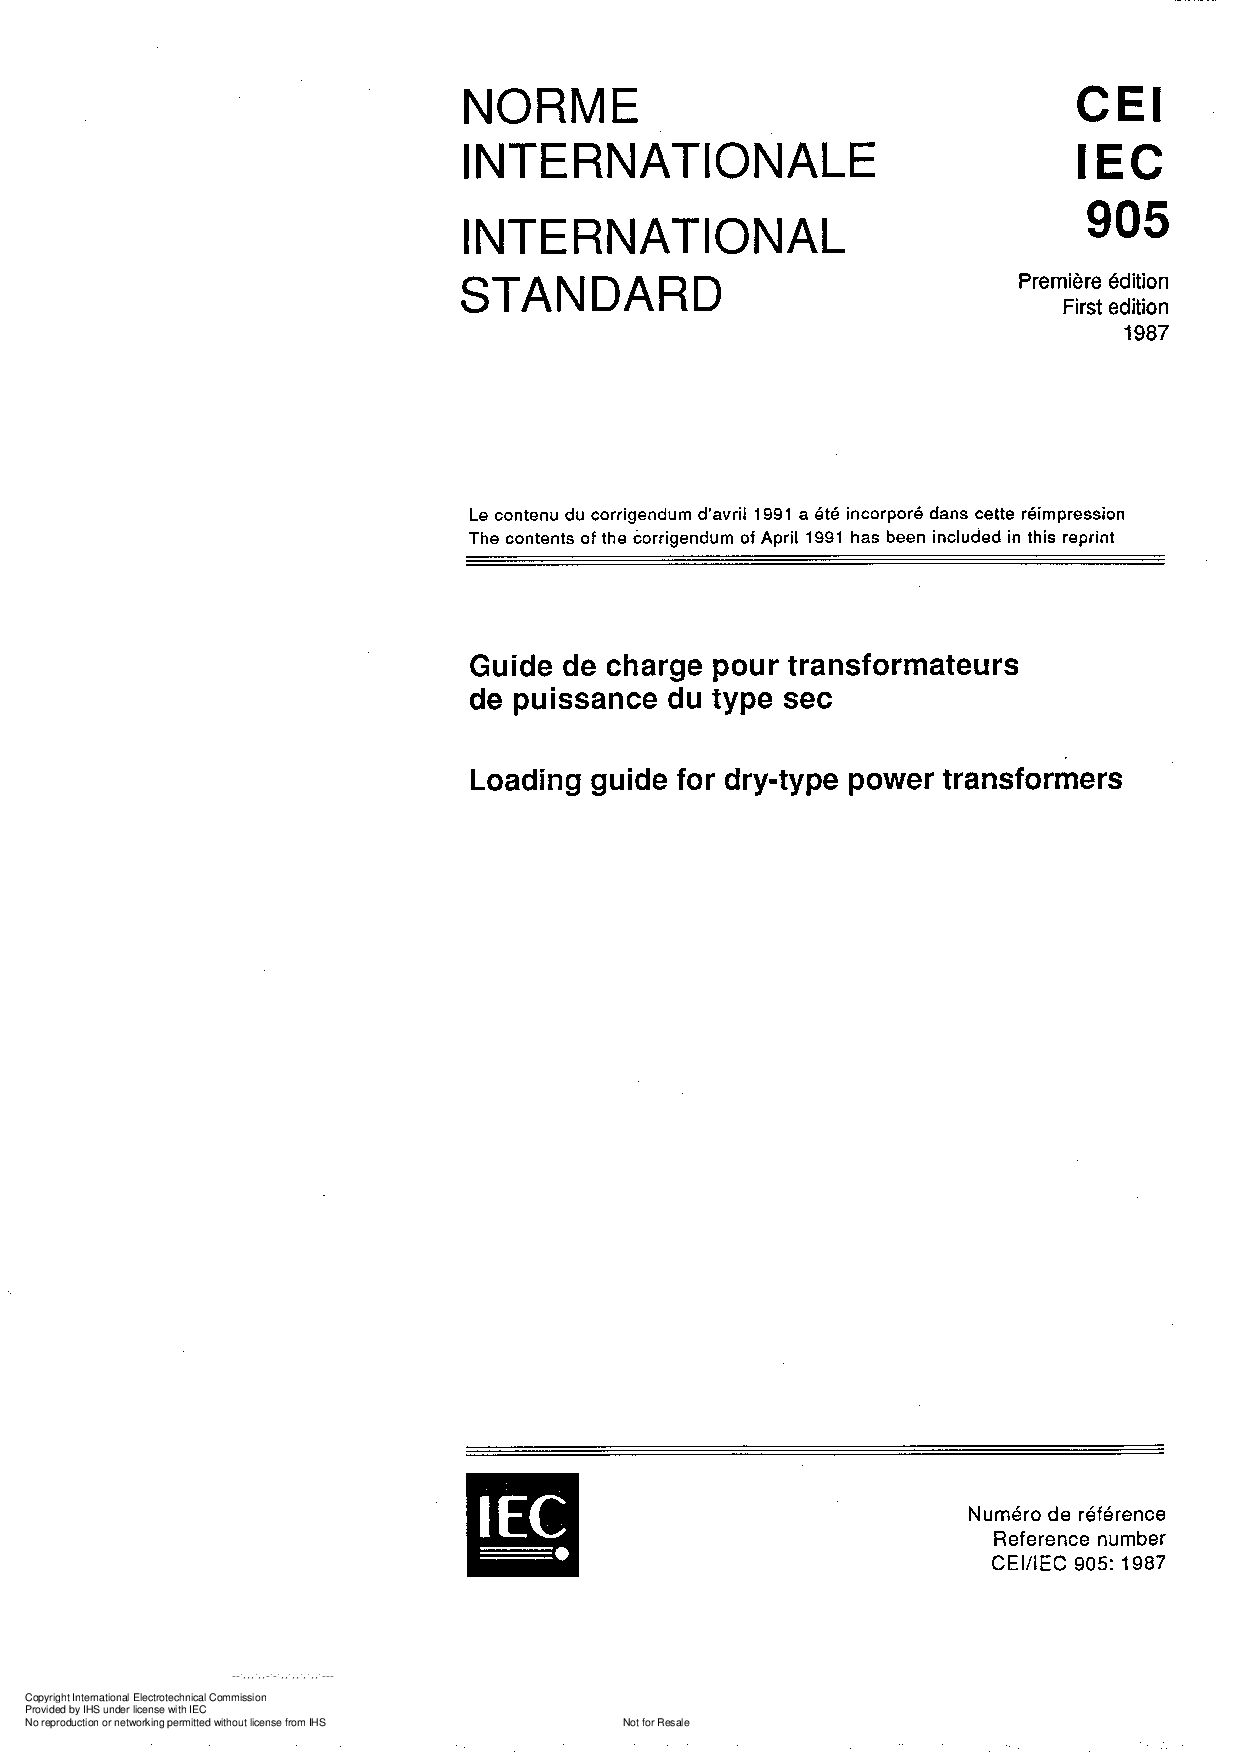 IEC 60905:1987